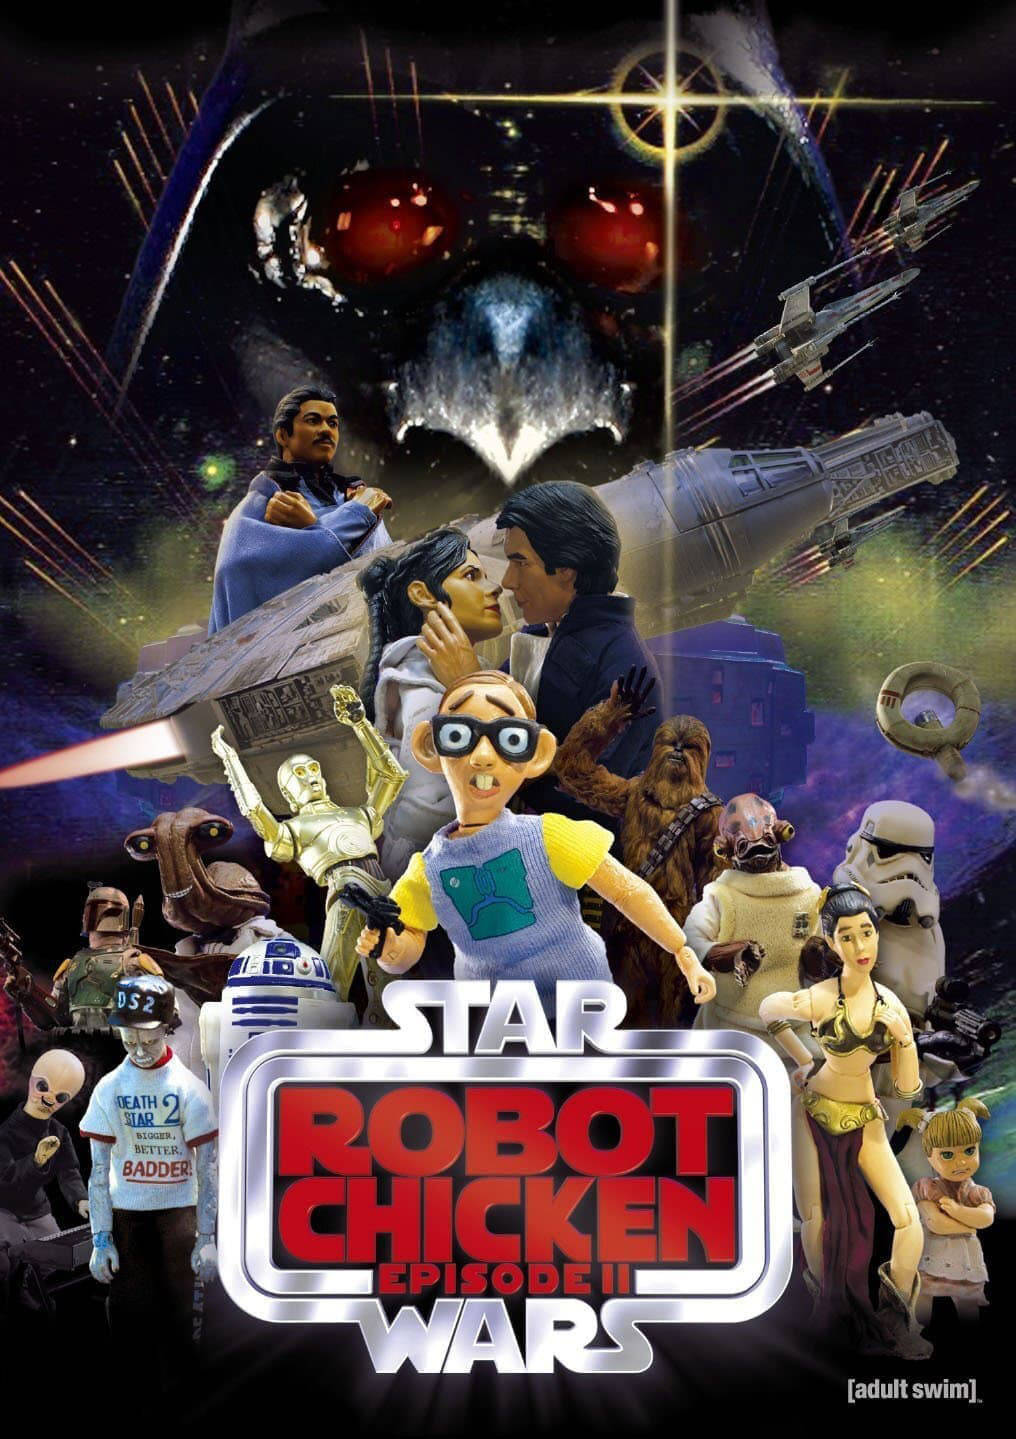 Robot Chicken Star Wars Parody Poster Background